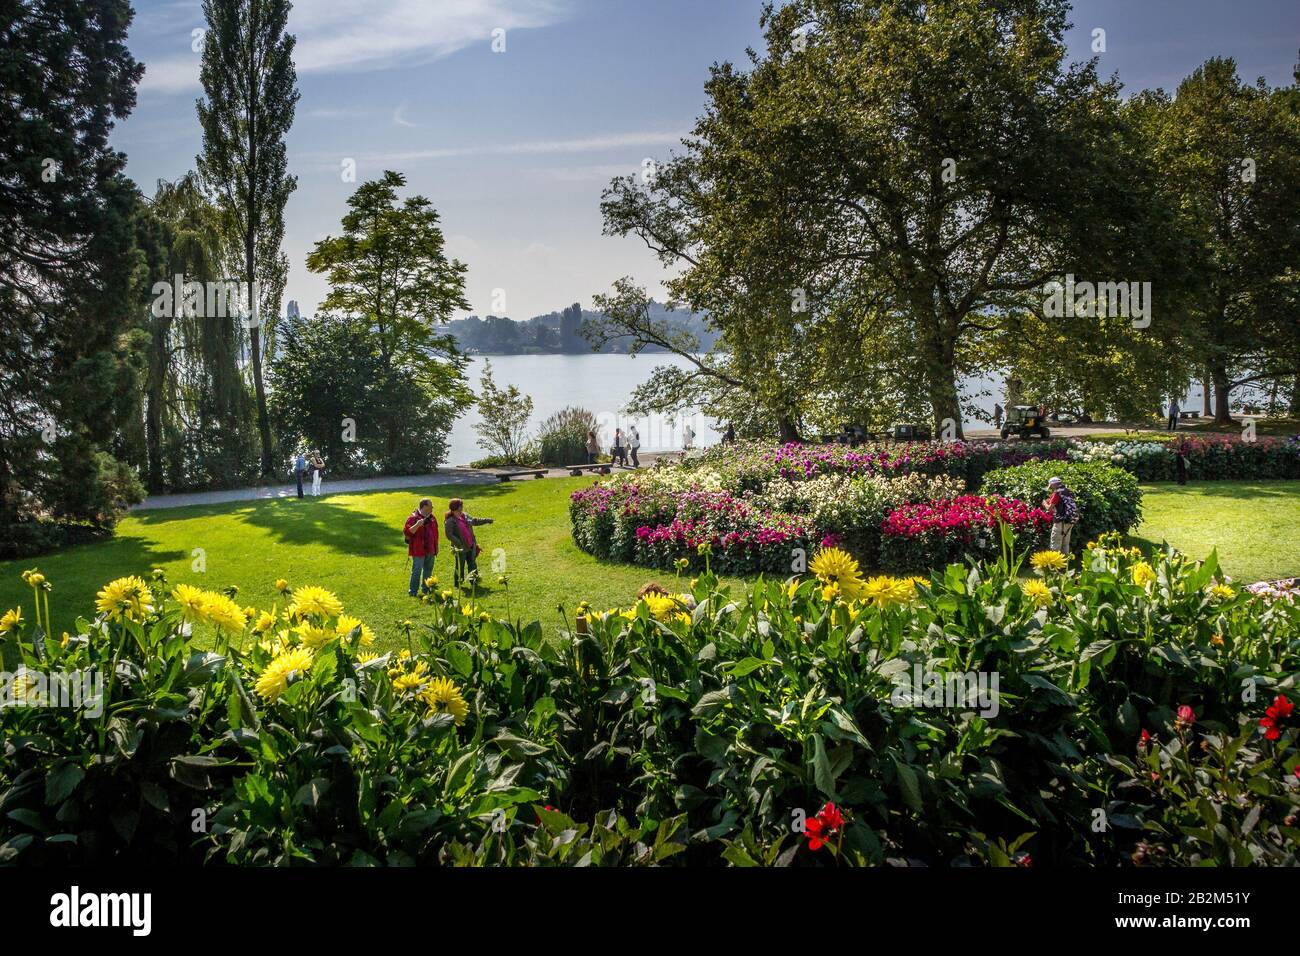 Mainau-Insel, Bodensee, Deutschland - 11 Sep. 2015: Das Gelände des Botanischen Gartens der Insel Mainau, dem Zufluss am Bodensee Stockfoto